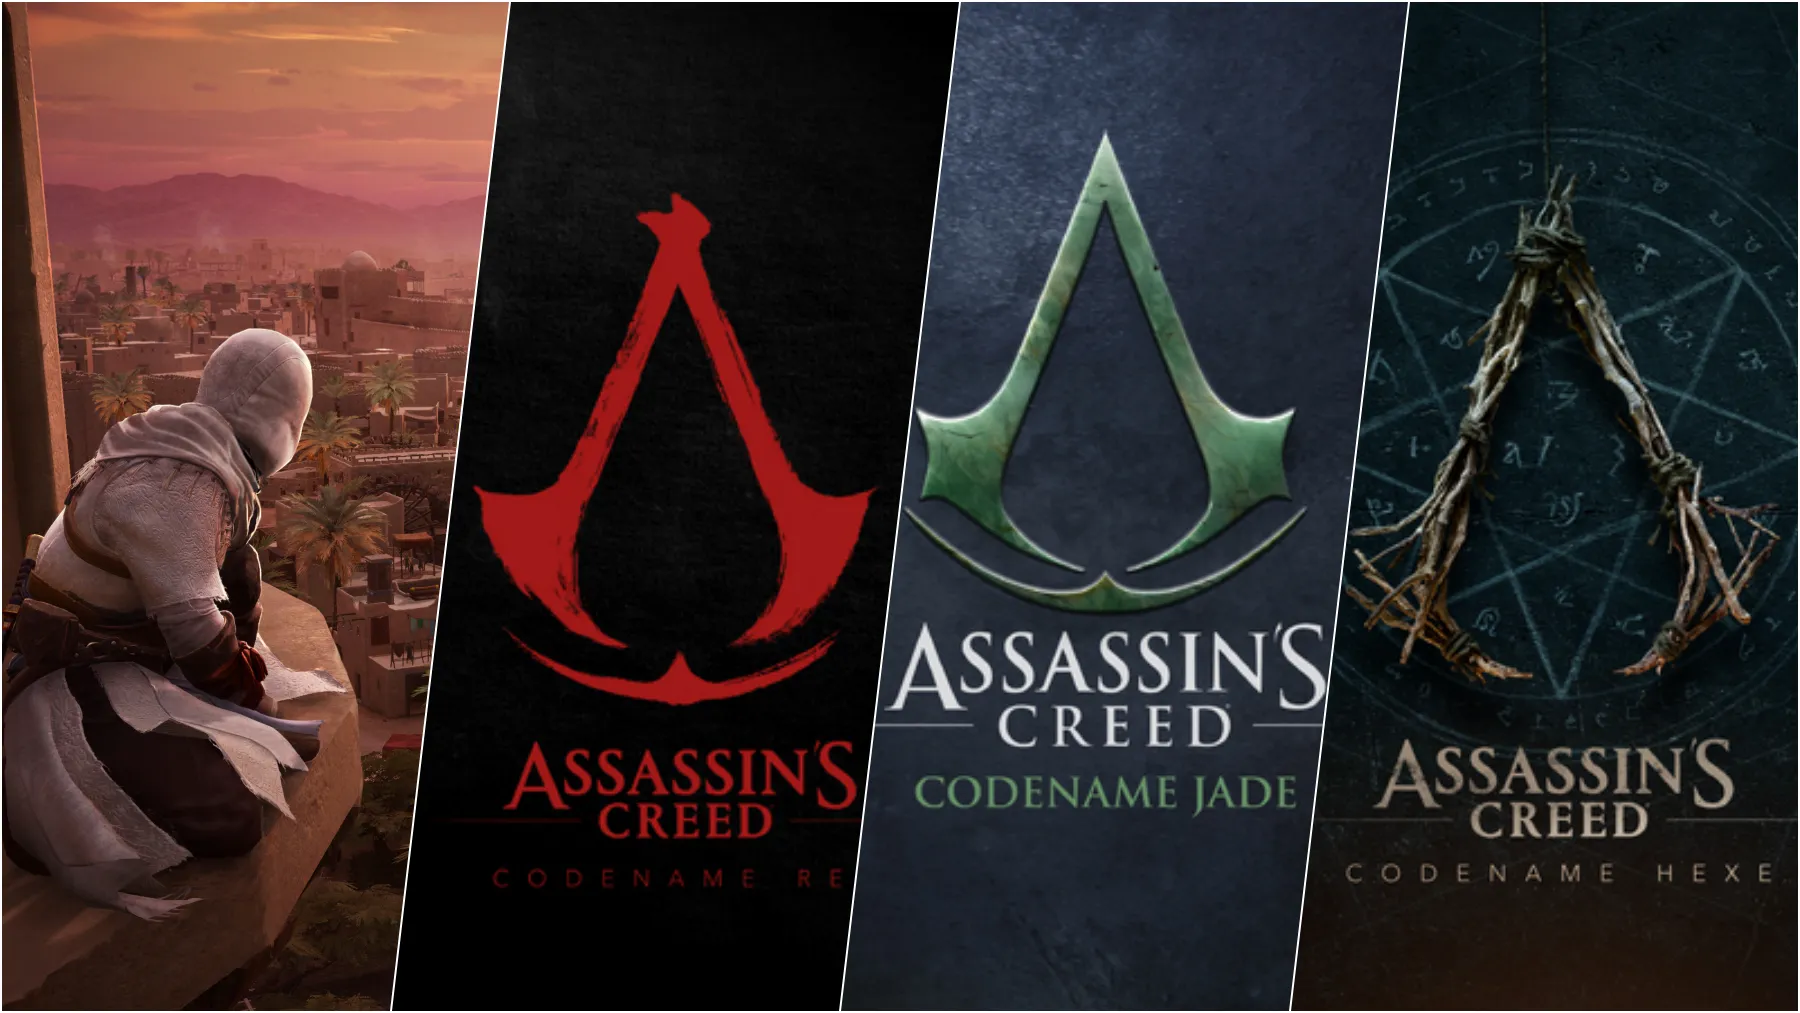 De Locos Ubisoft Desvela 4 Juegos De Assassin S Creed Y Serie Netflix